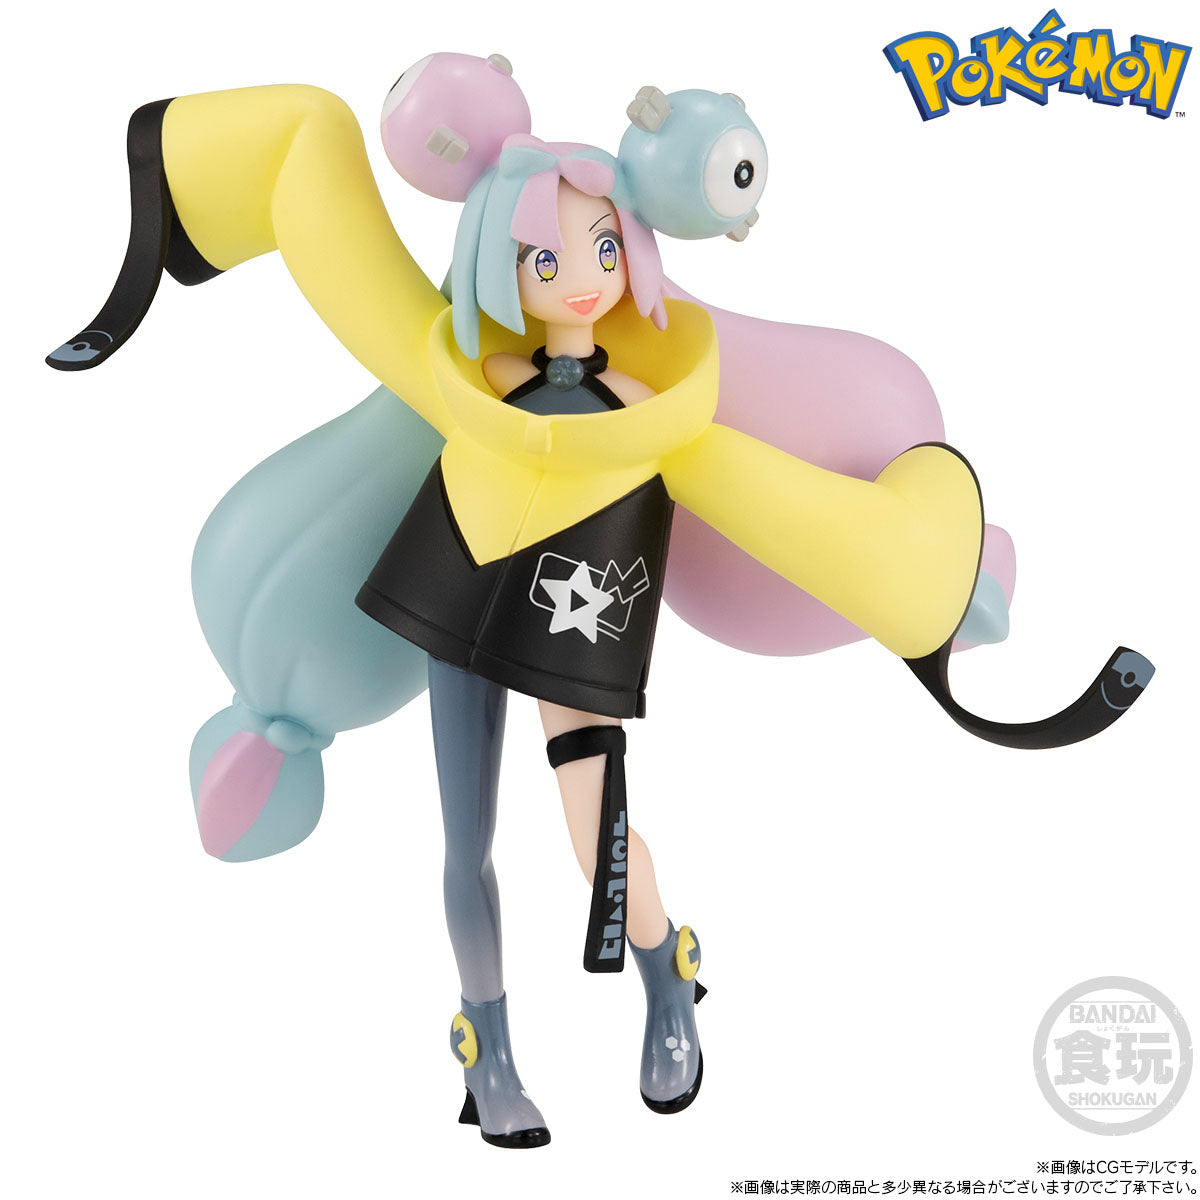 Bandai - Shokugan - Pokemon Scale World Paldea Region - Iono &amp; Bellibolt - Marvelous Toys